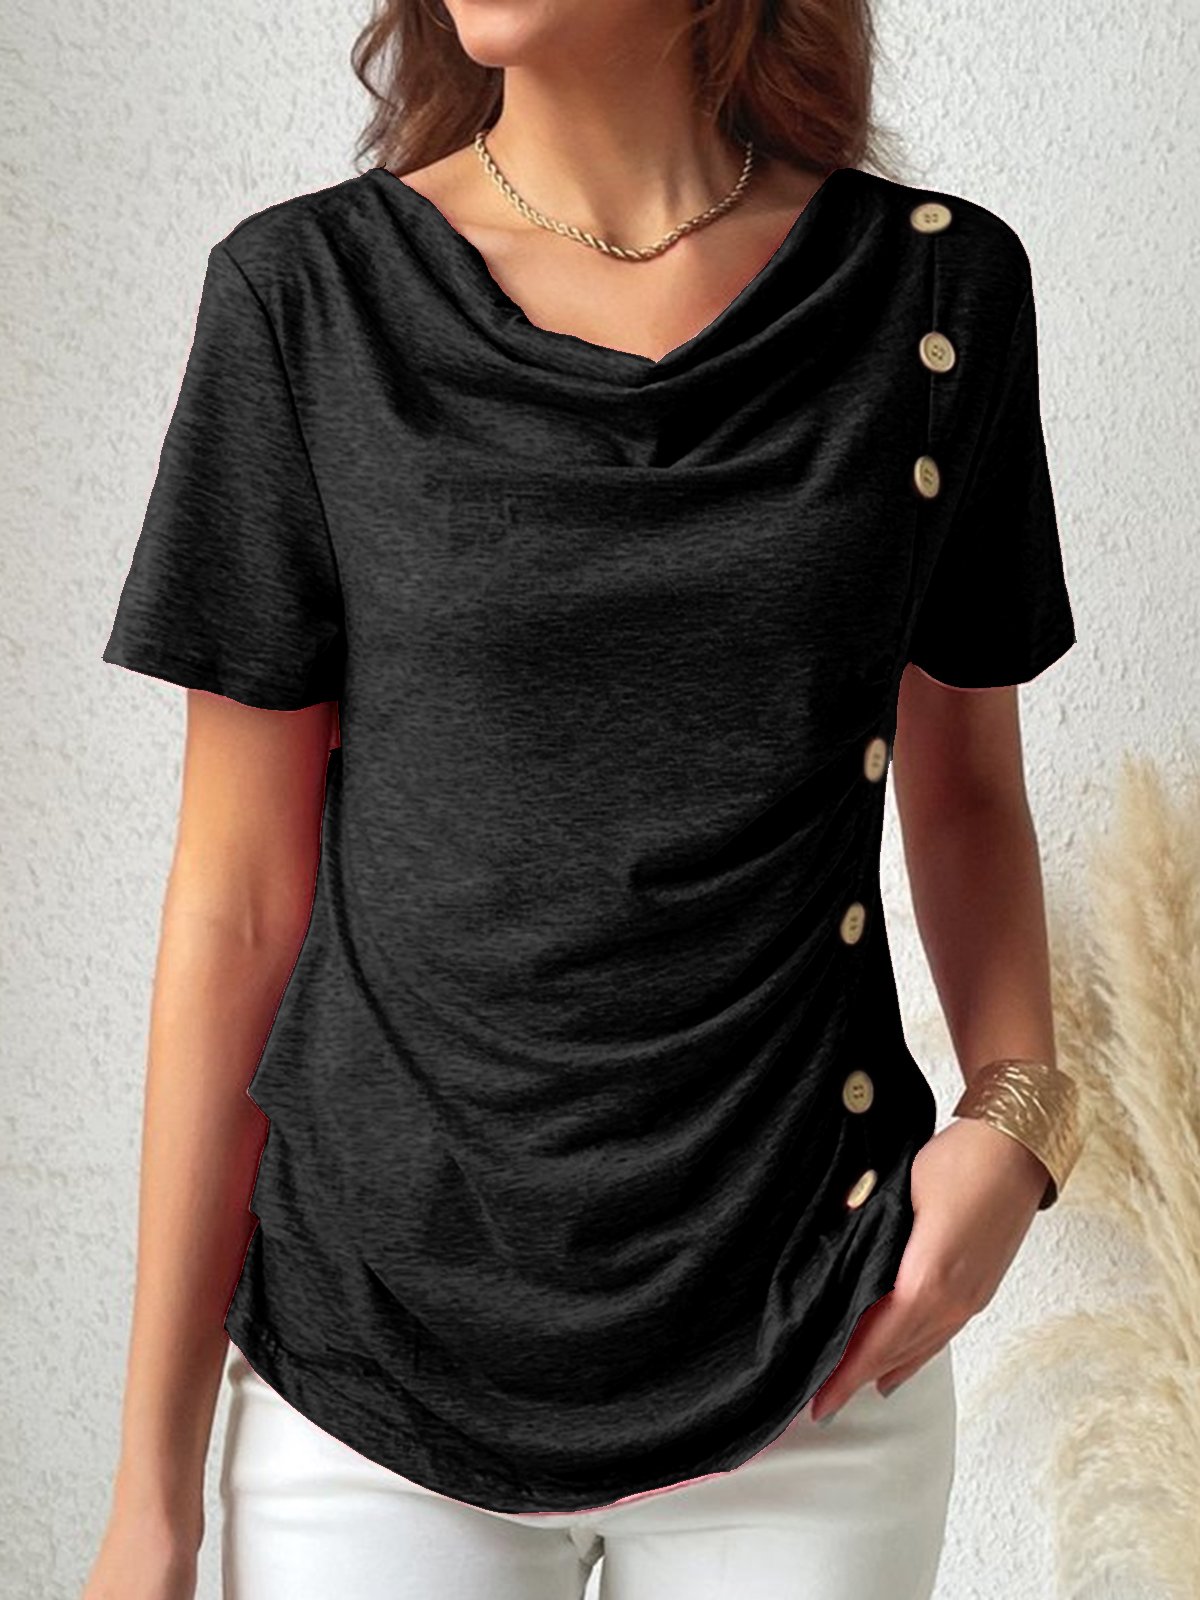 Plain Buttoned T- Shirt for Women Casual Regular Fit Shirt